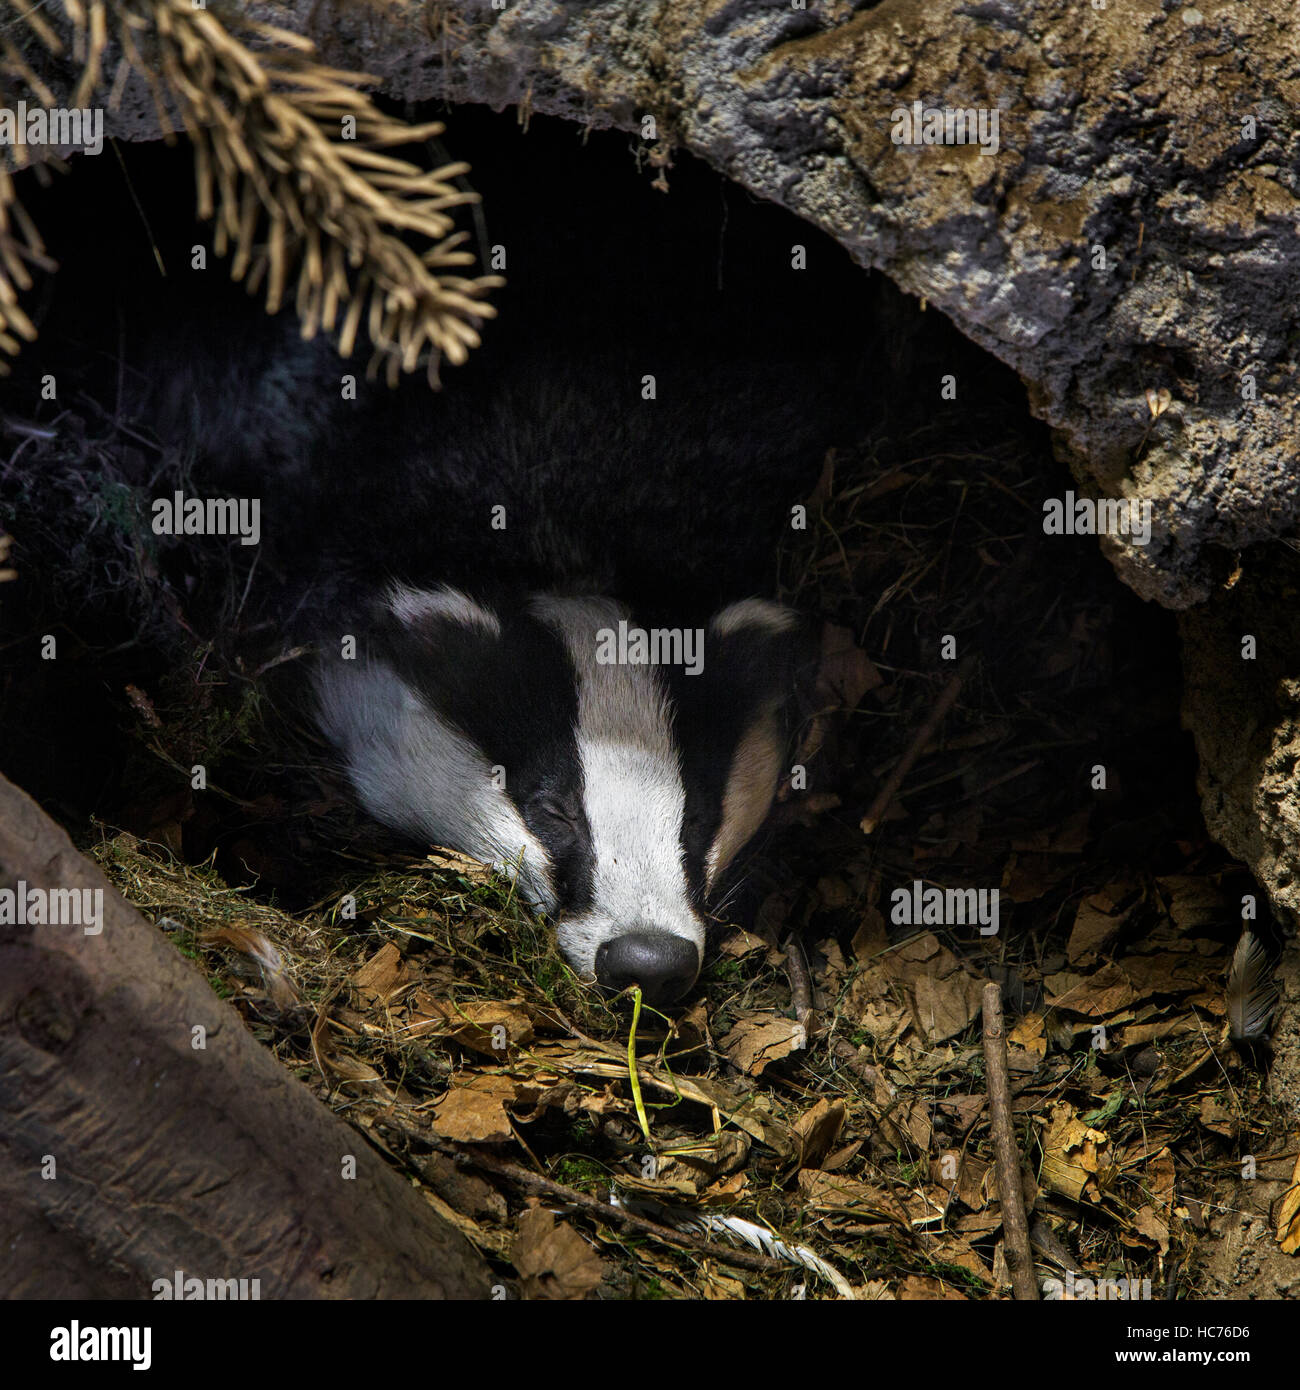 Blaireau européen (Meles meles) sleeping in den / sett dans les forêts de conifères Banque D'Images